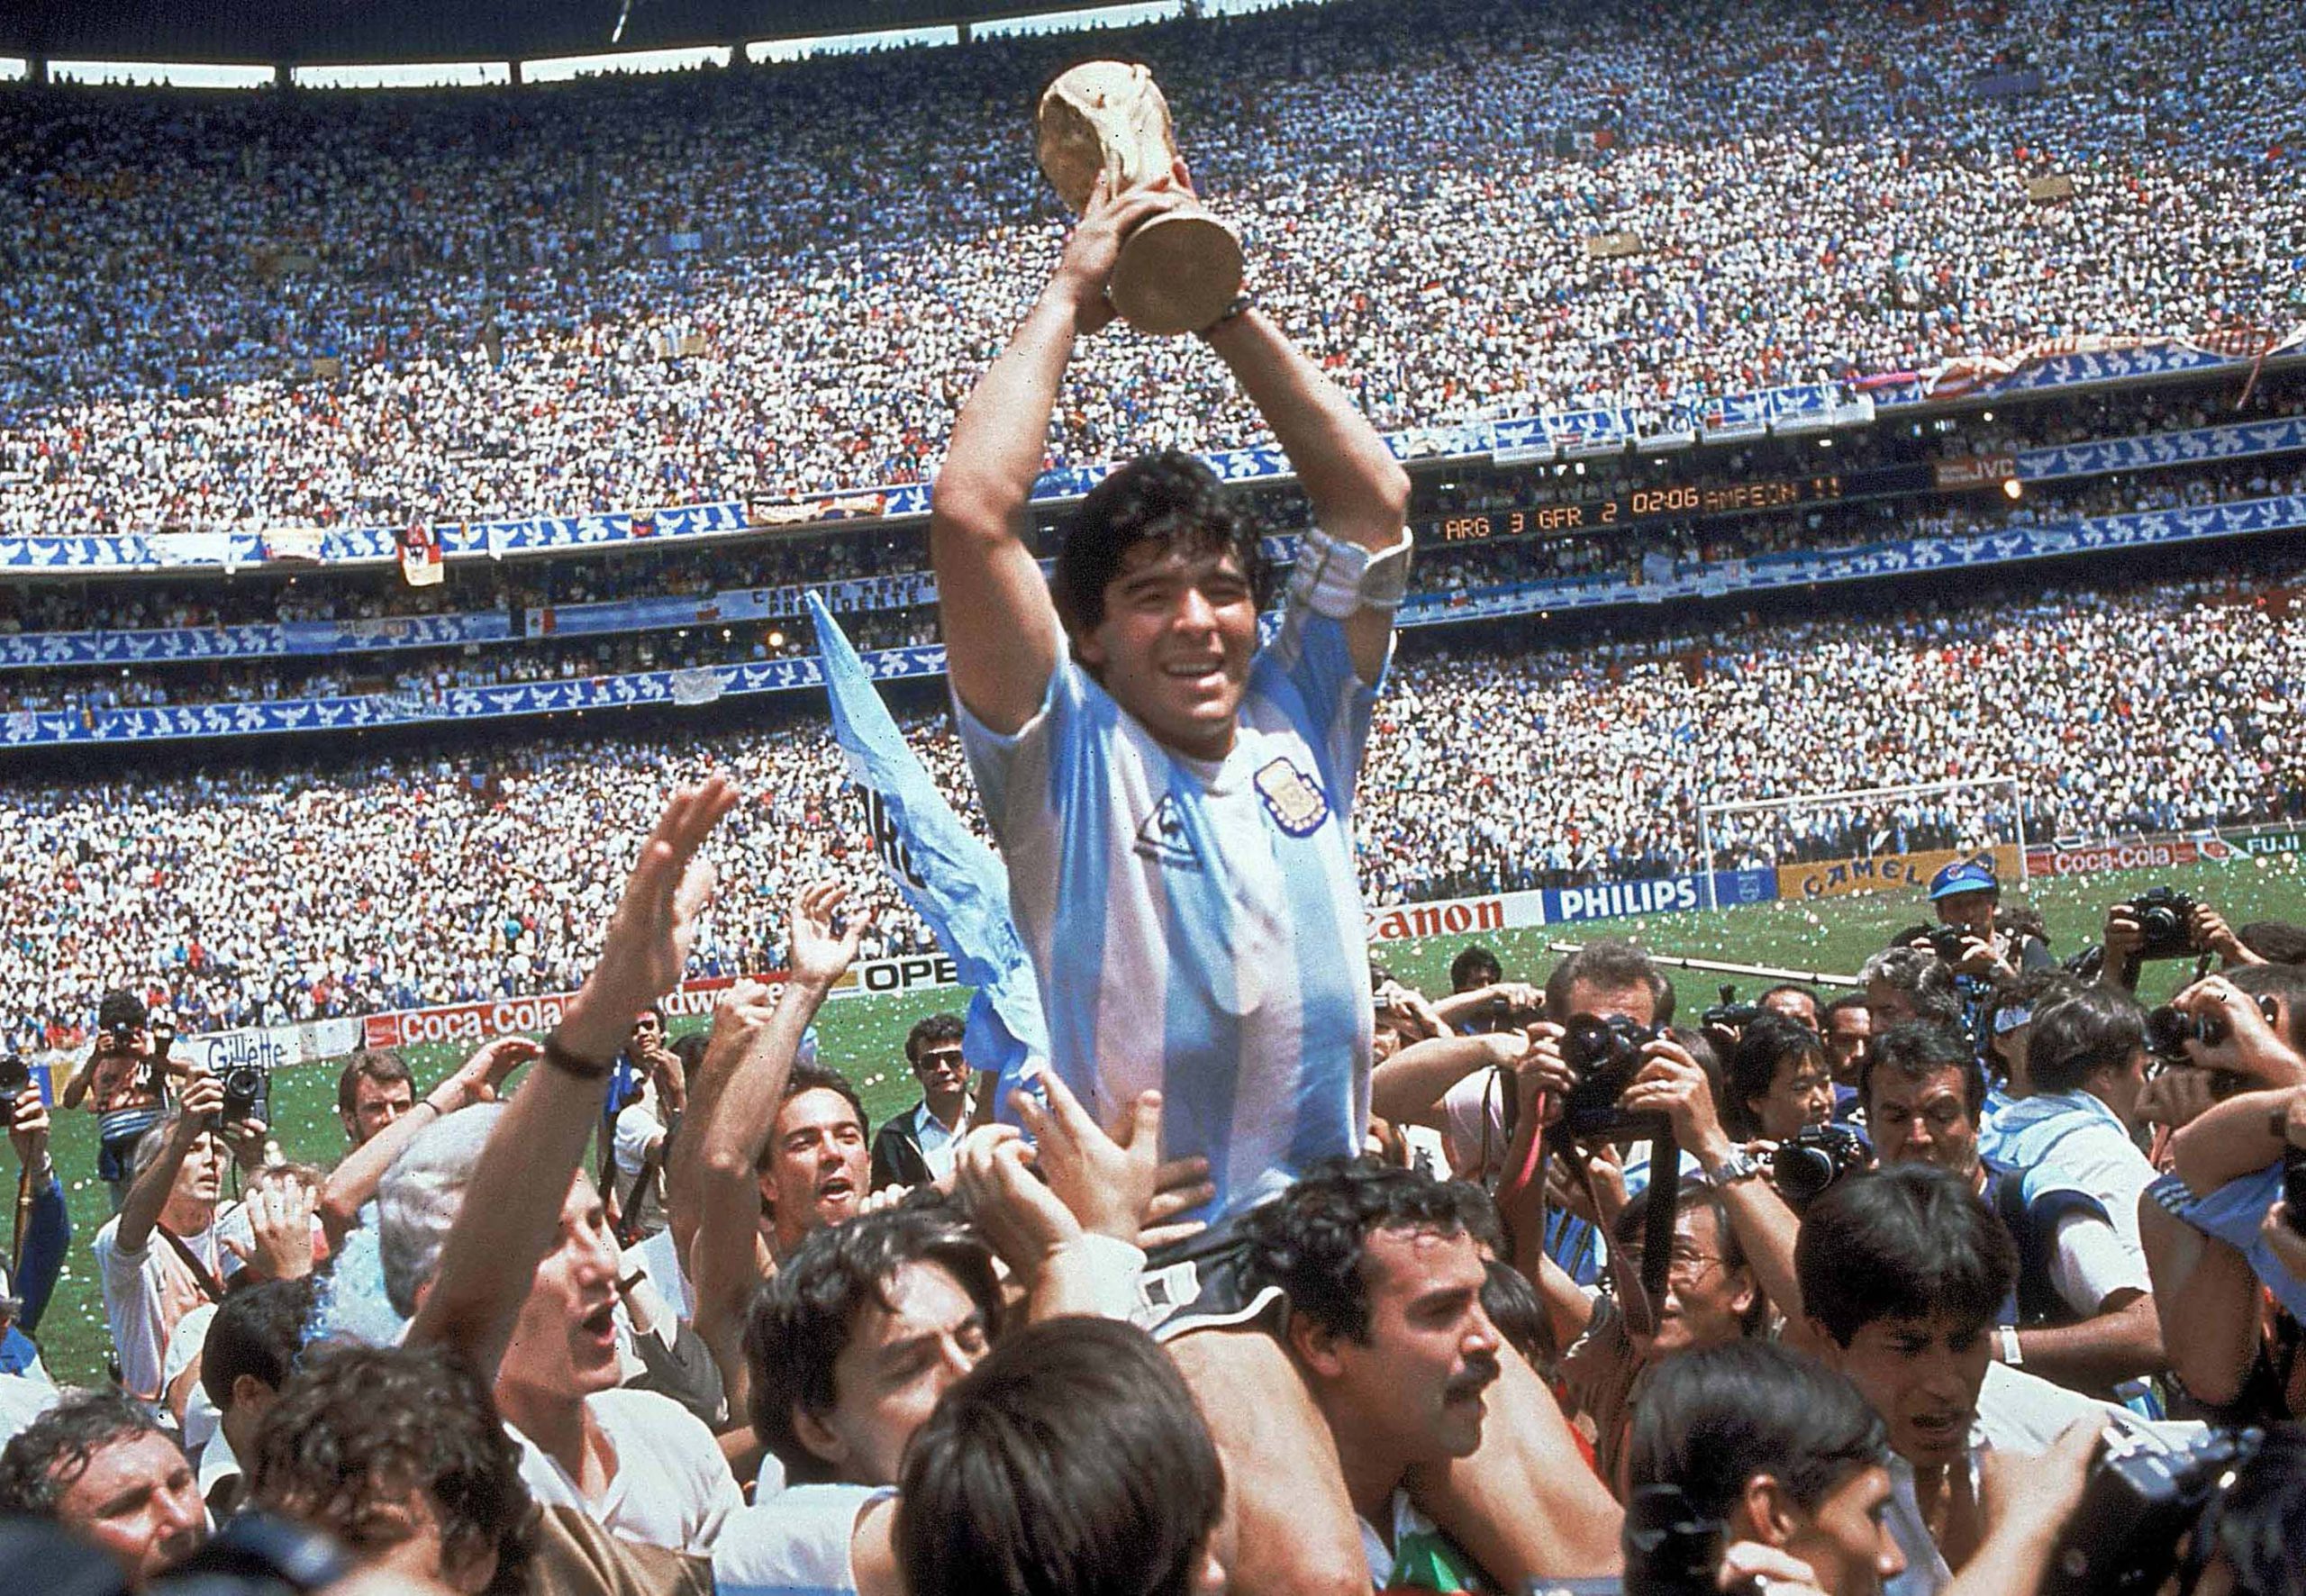 Bucuria imensă de la Cupa Mondială din 1986